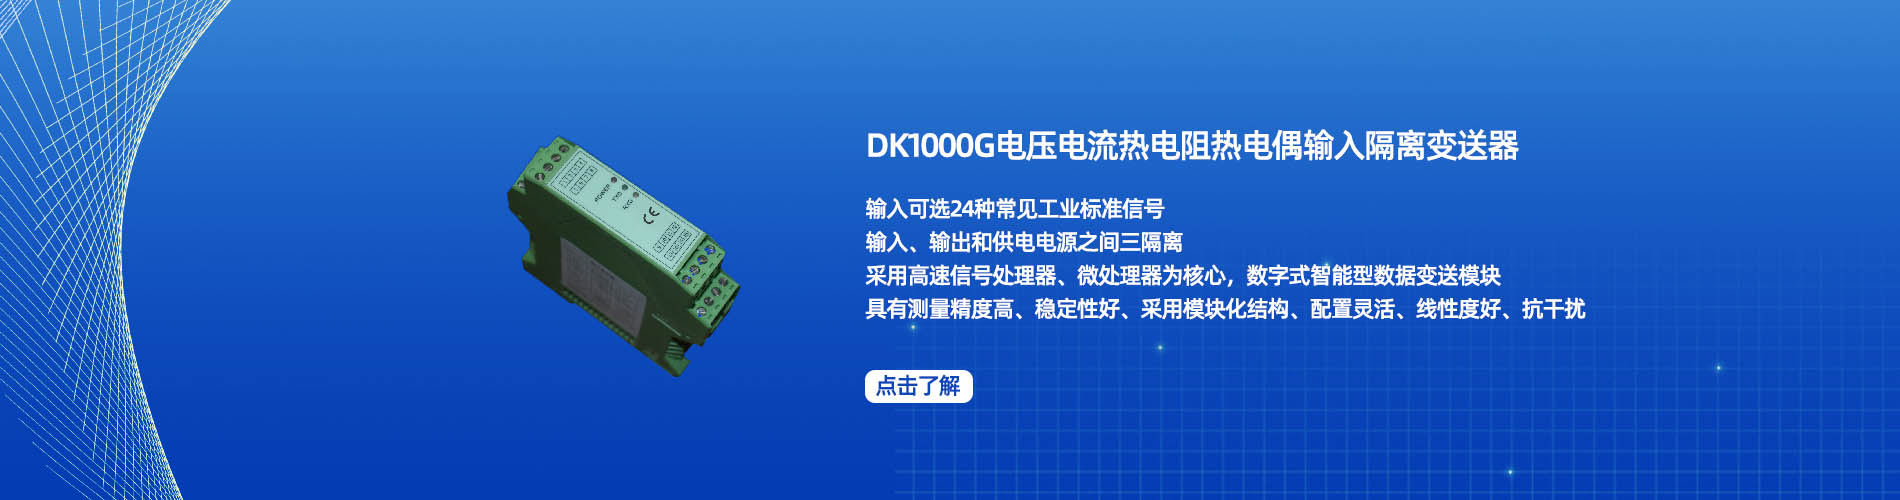 DK 1000G